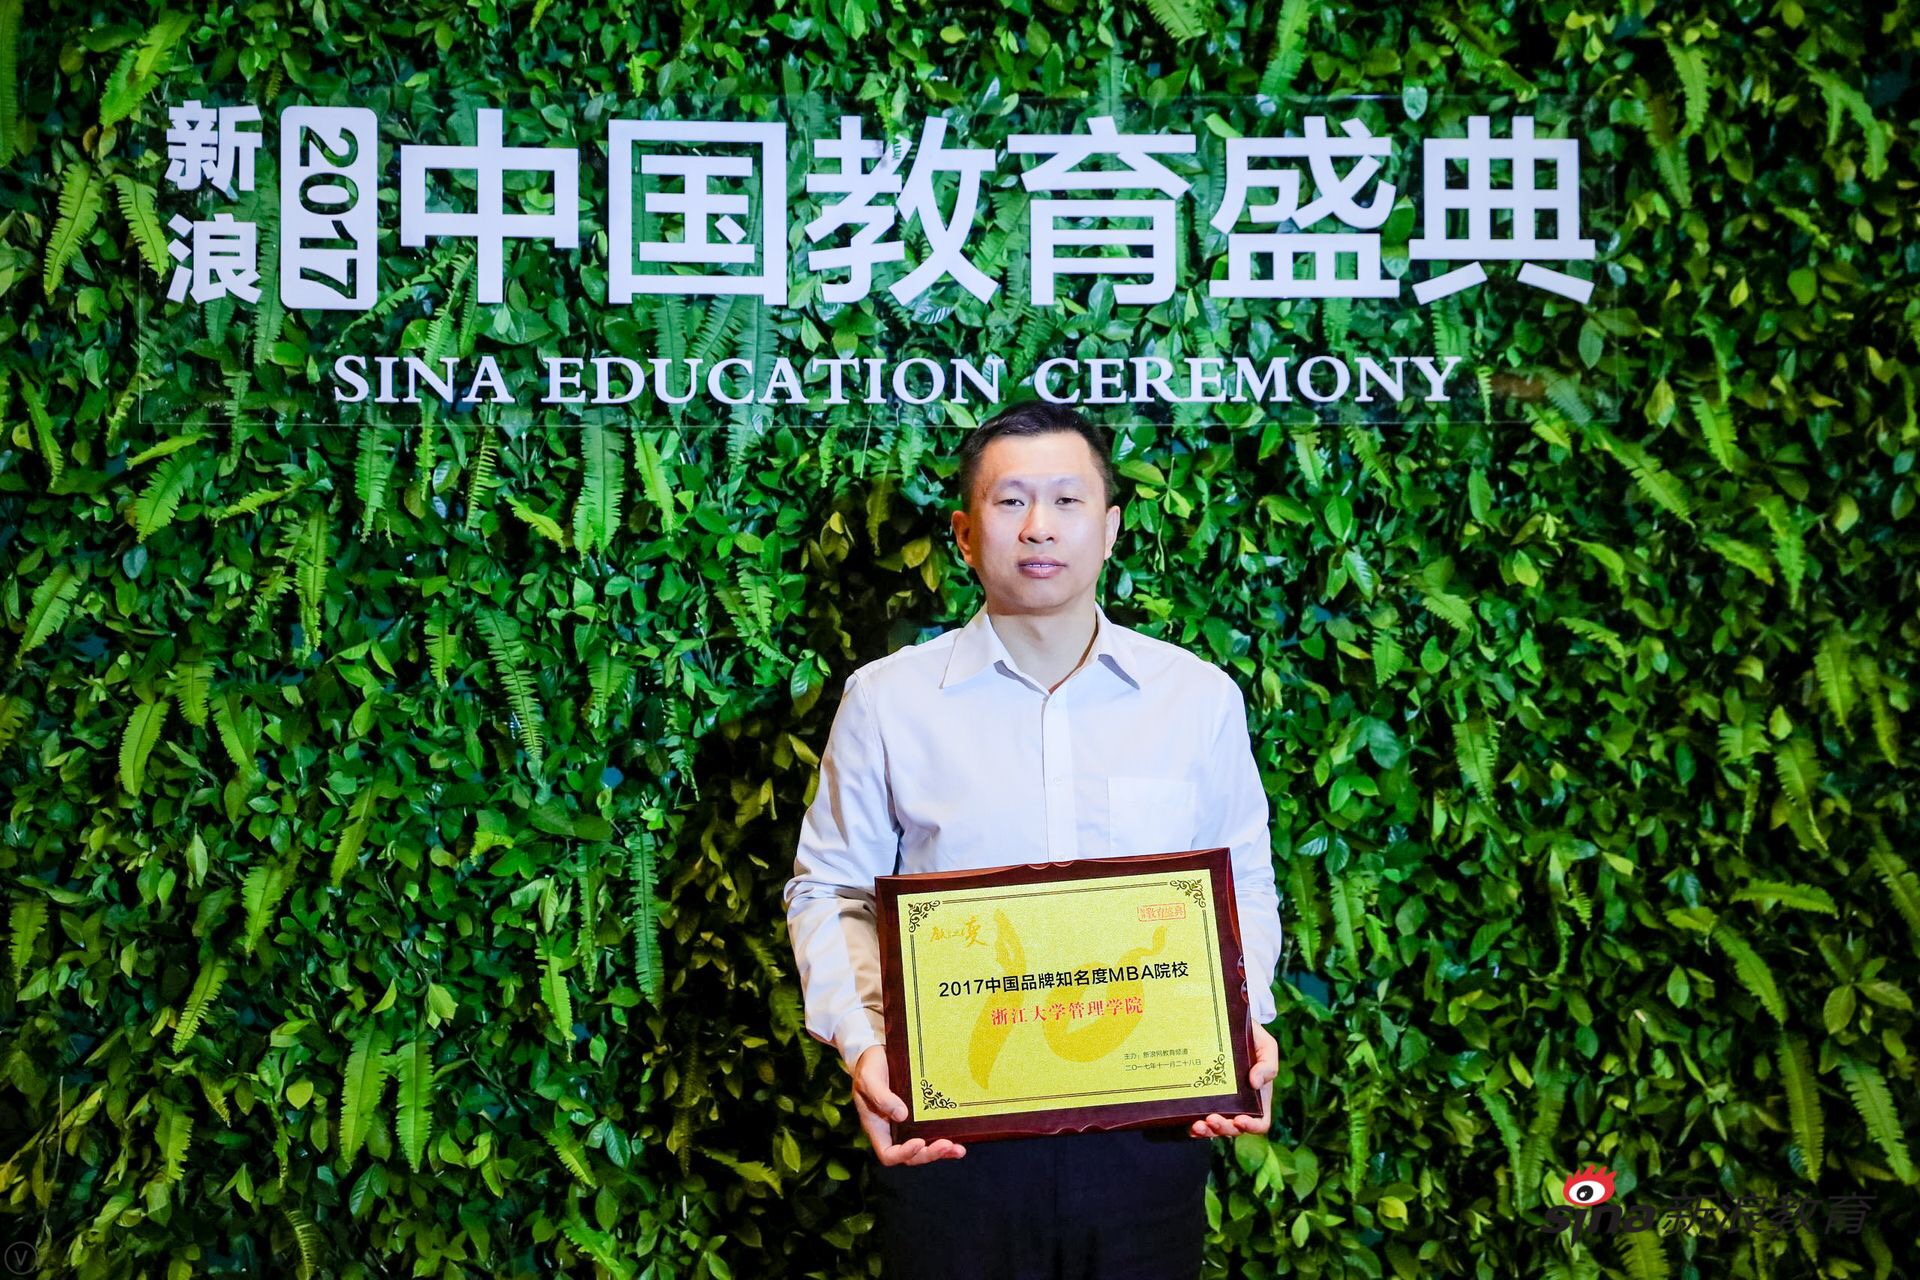 浙大管院荣获新浪教育盛典“2017中国品牌知名度MBA院校”称号